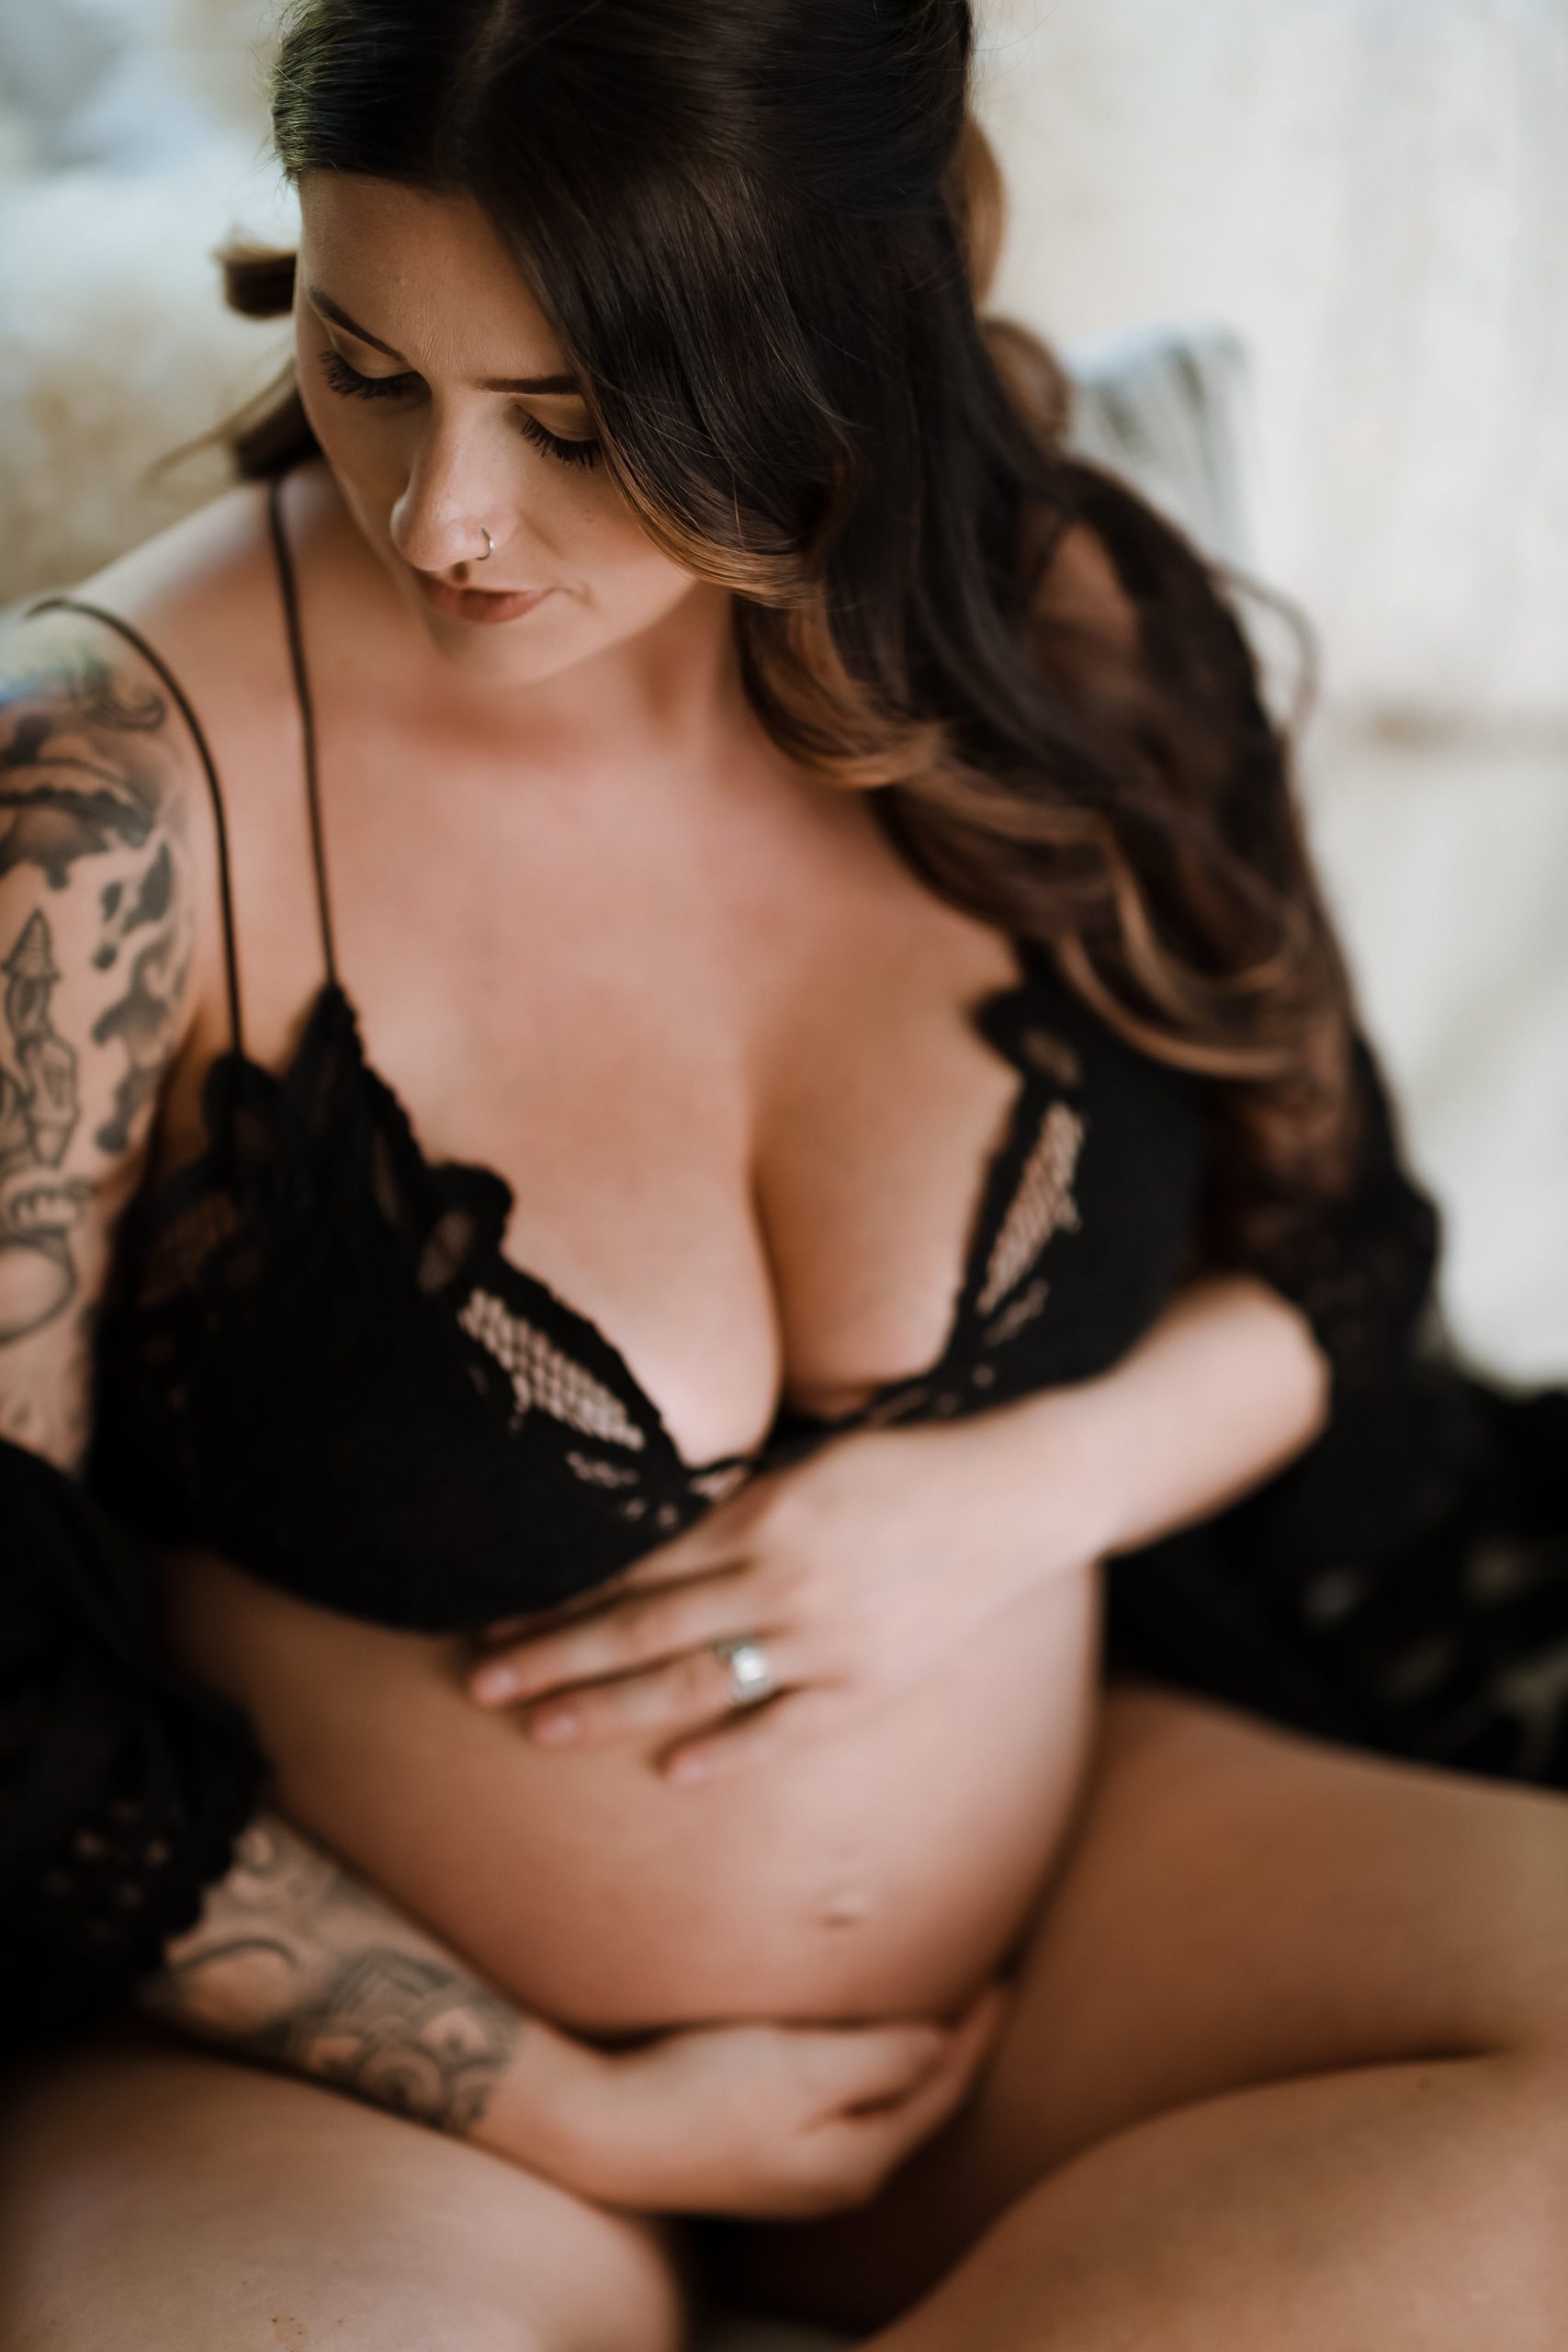 Pregnant woman in black lace bra